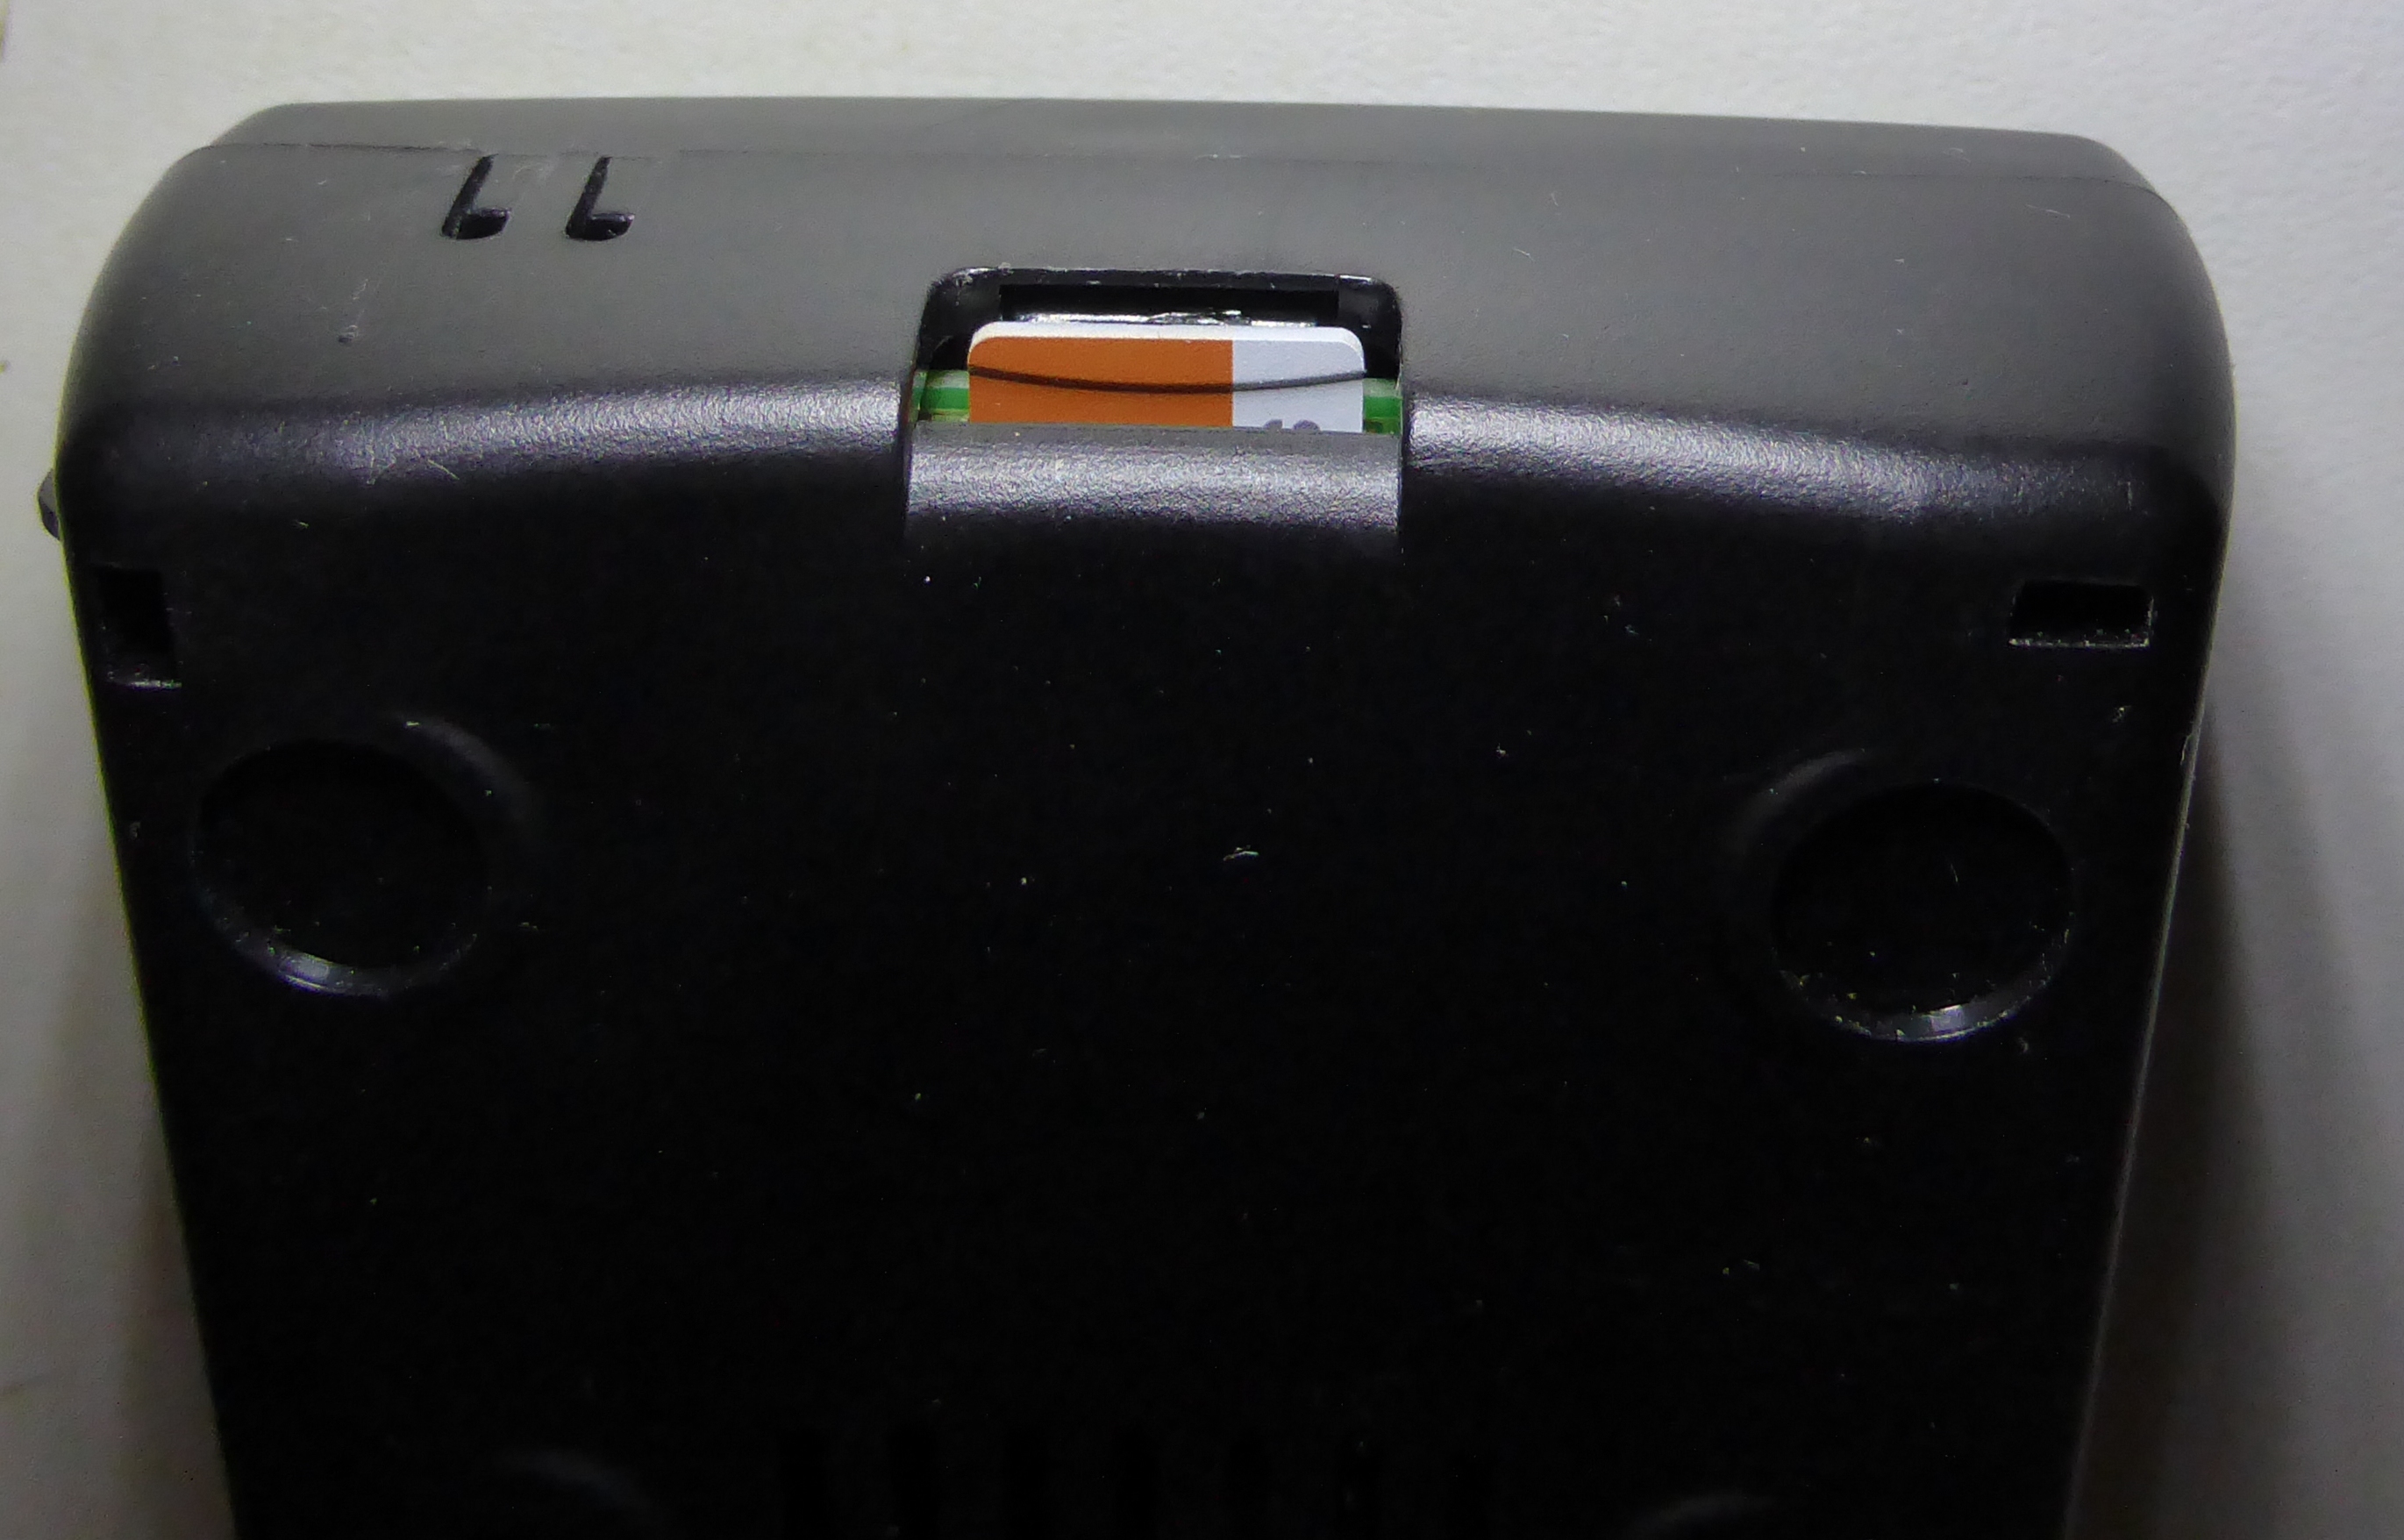 Boîtier avec carte microSD en place